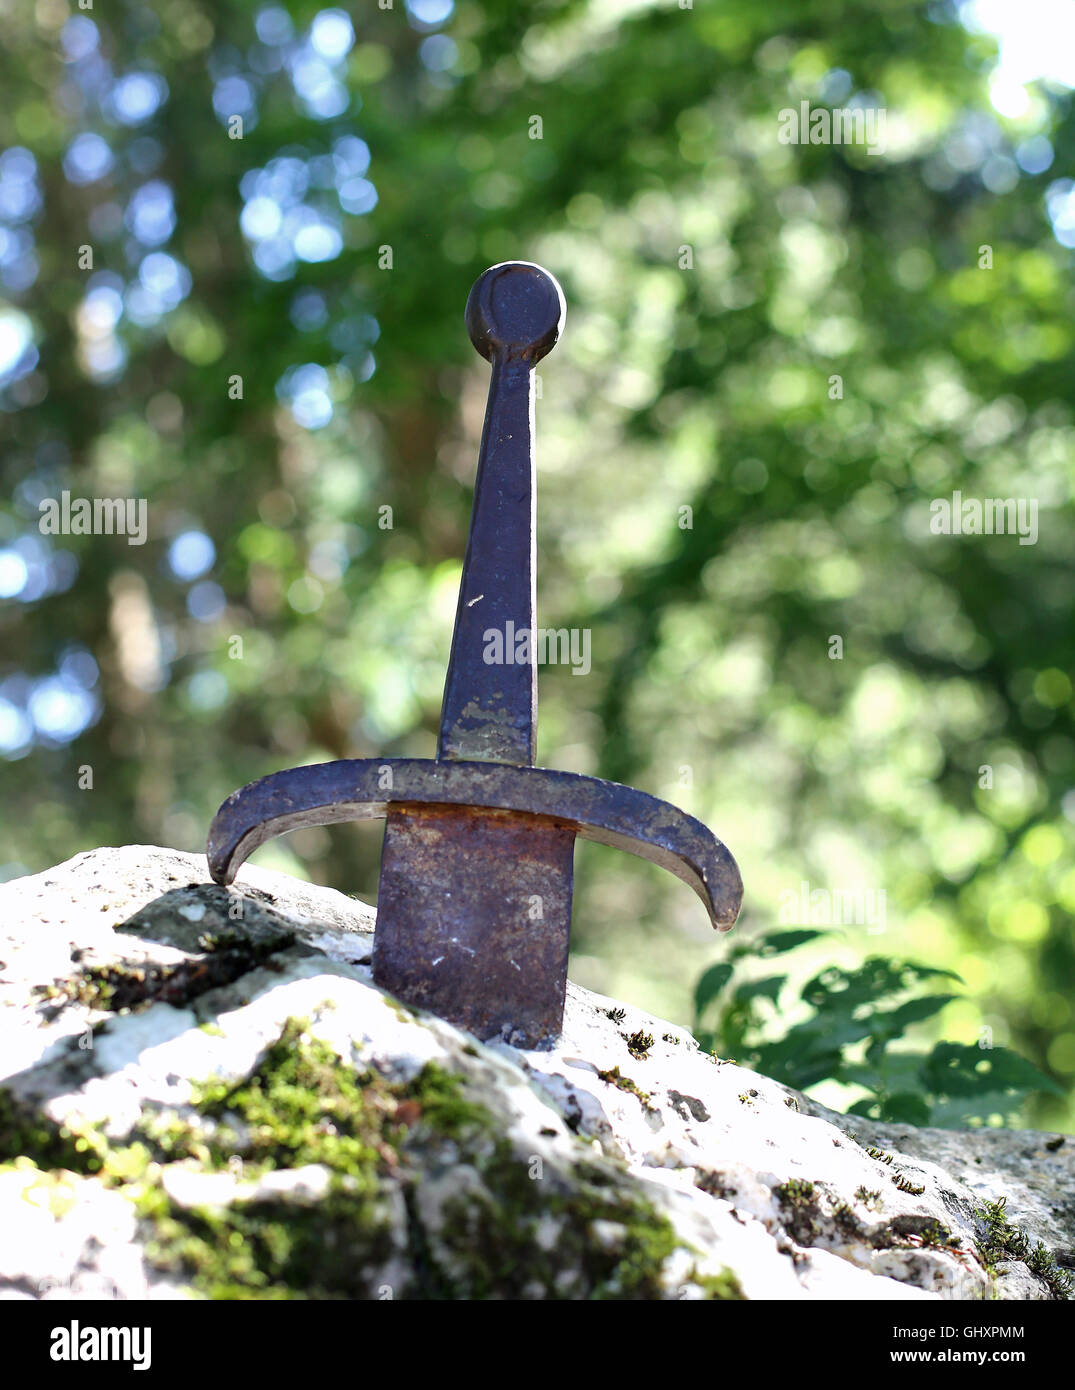 berühmte Excalibur-Schwert von König Artus im Stein Stockfotografie - Alamy